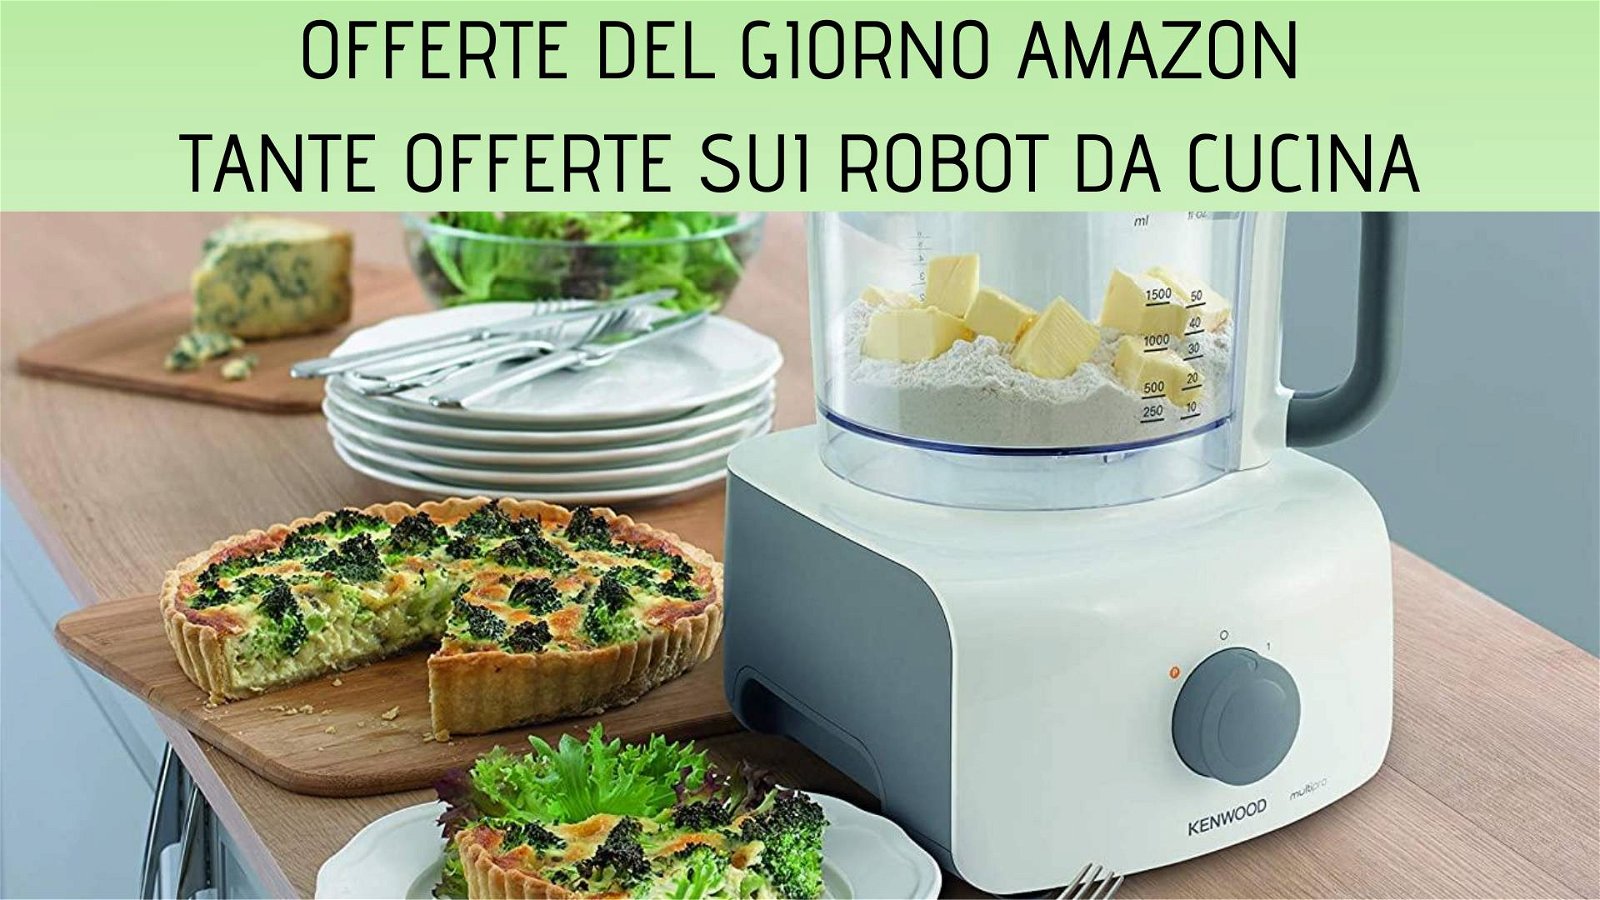 Immagine di Offerte del giorno Amazon: tanti sconti sui robot da cucina!